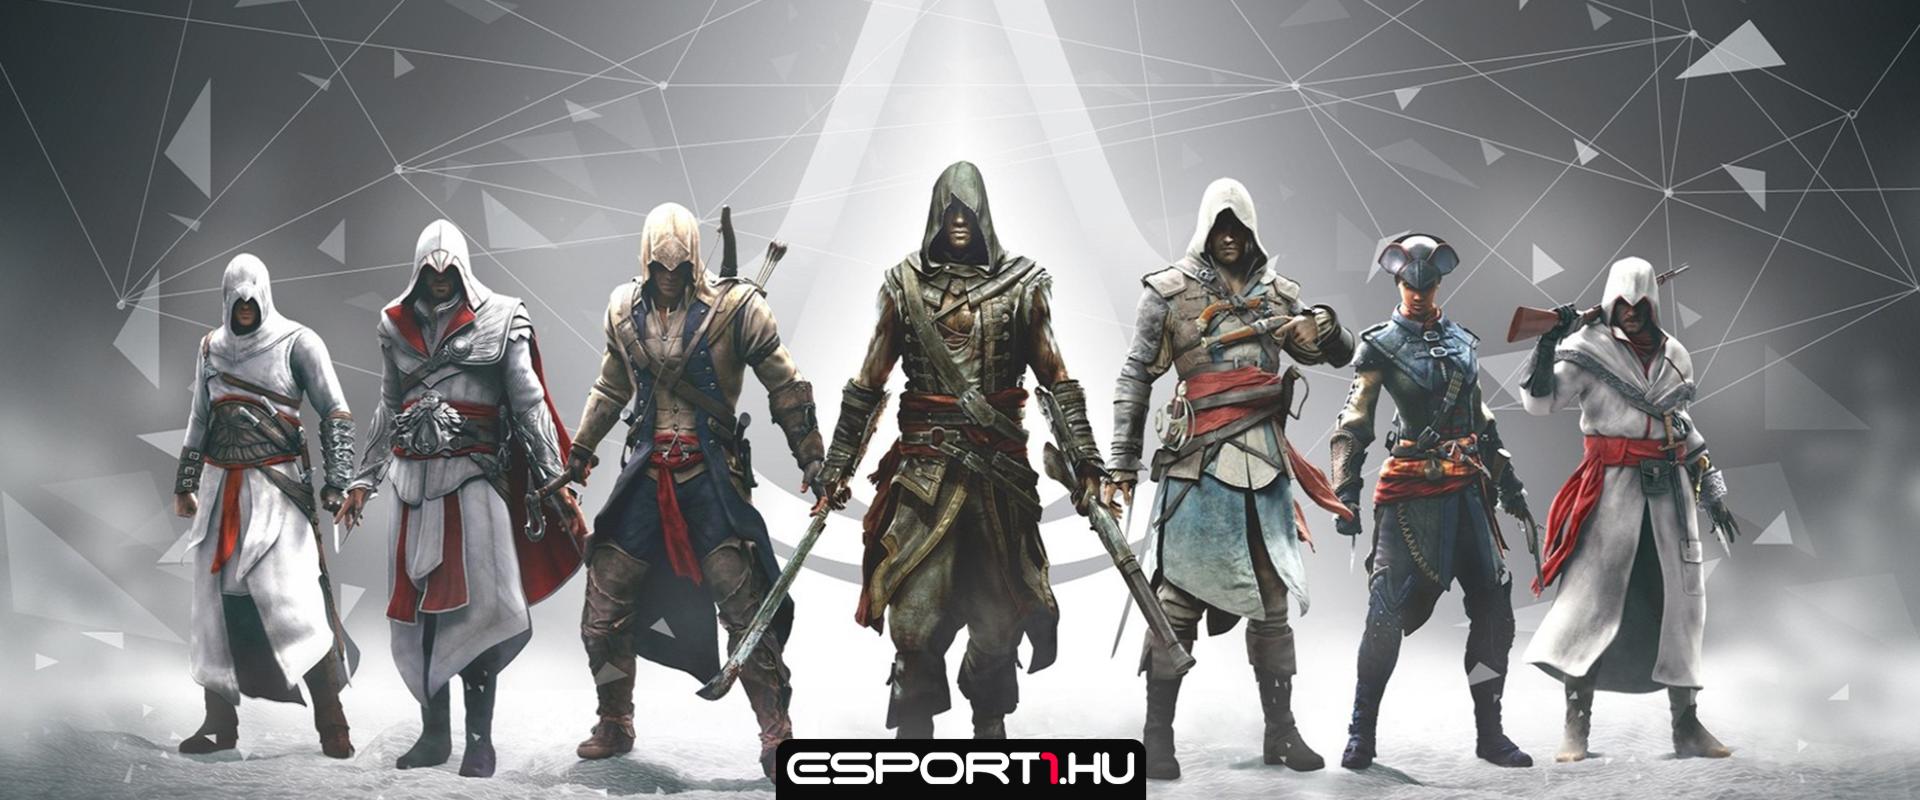 15 éves az Assassin's Creed, élő adásban jelenthetik be, mi lesz a sorozat jövője